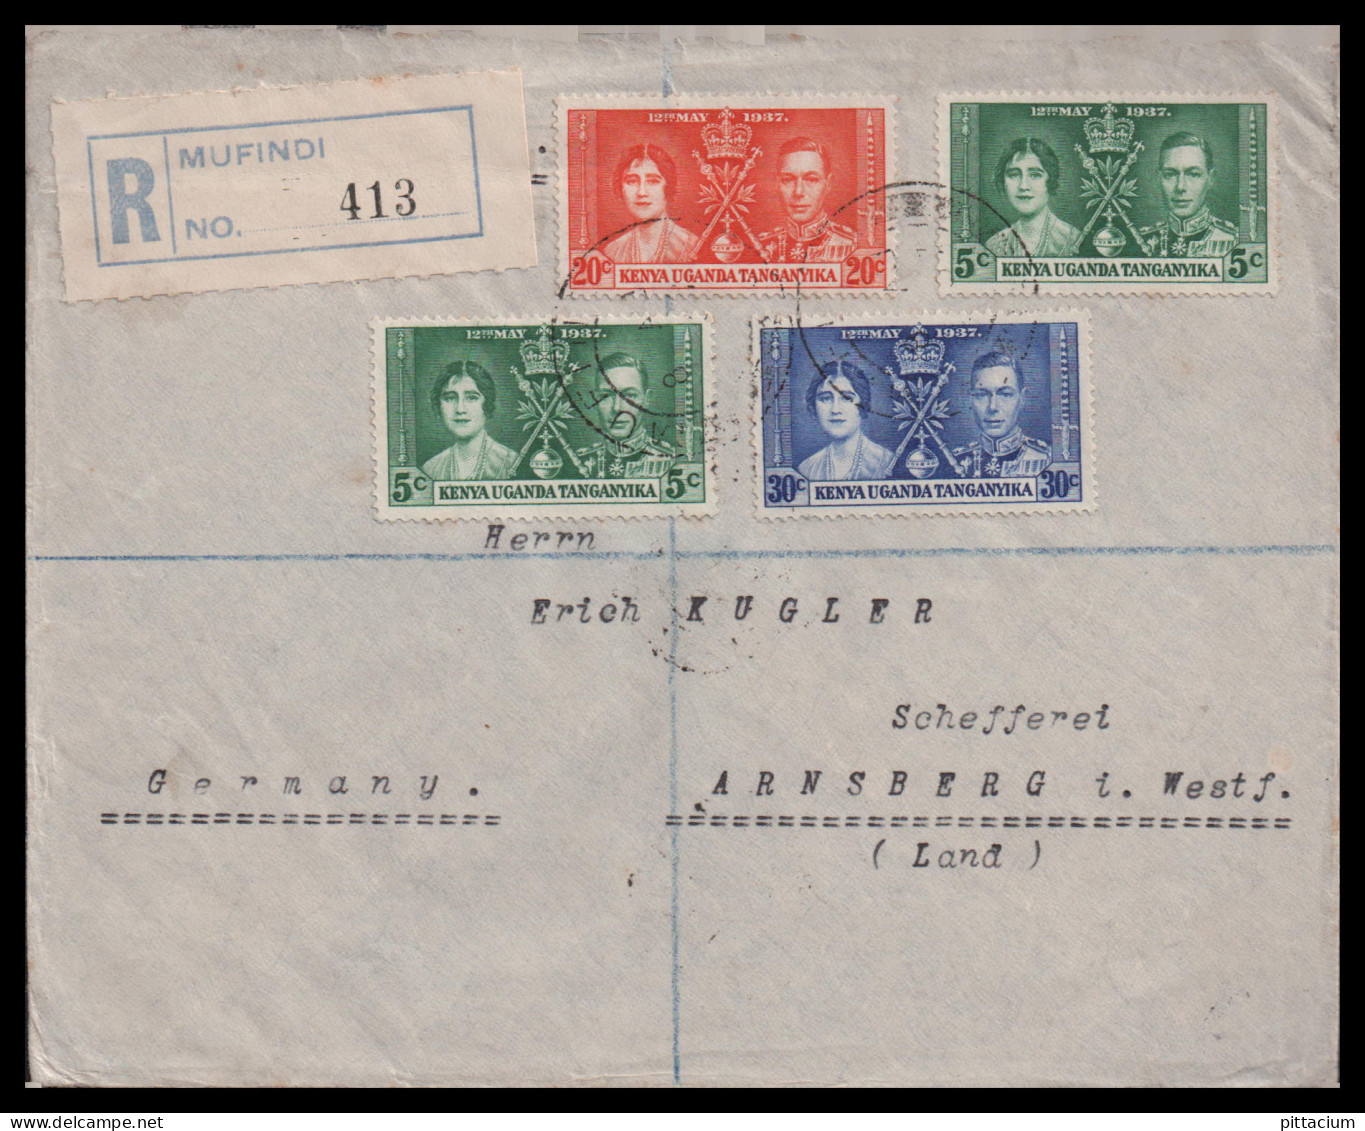 Grossbritannien Gebiete 1937: Luftpostbrief  | Afrika | Mufindi, Daressalaam, Arnsberg - Tanganyika (...-1932)